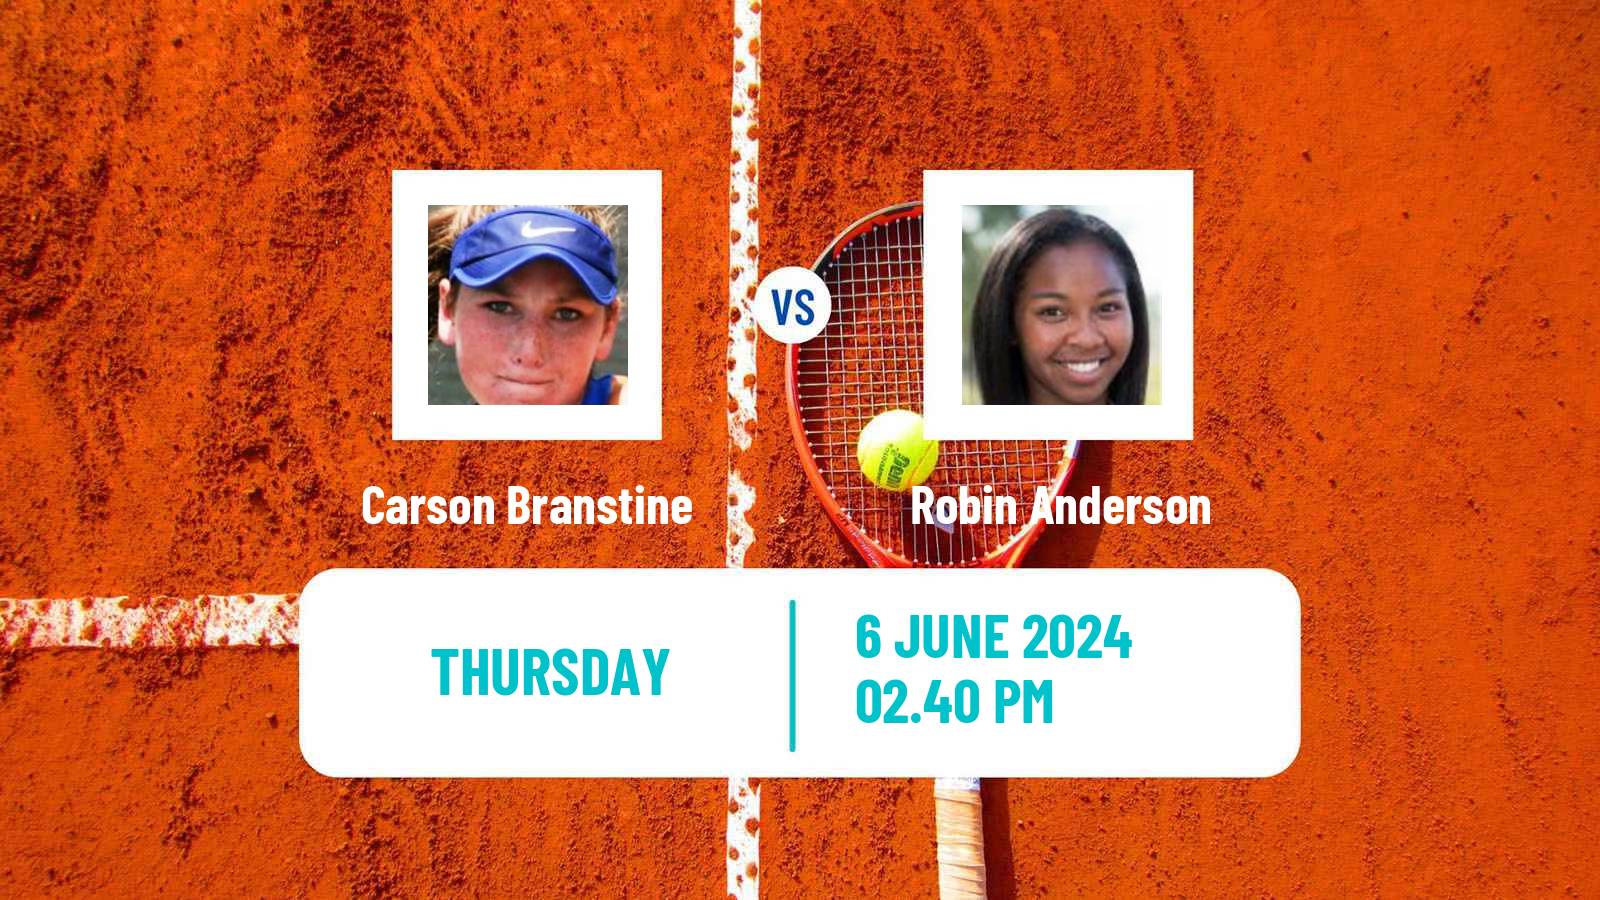 Tennis ITF W75 Sumter Sc Women Carson Branstine - Robin Anderson